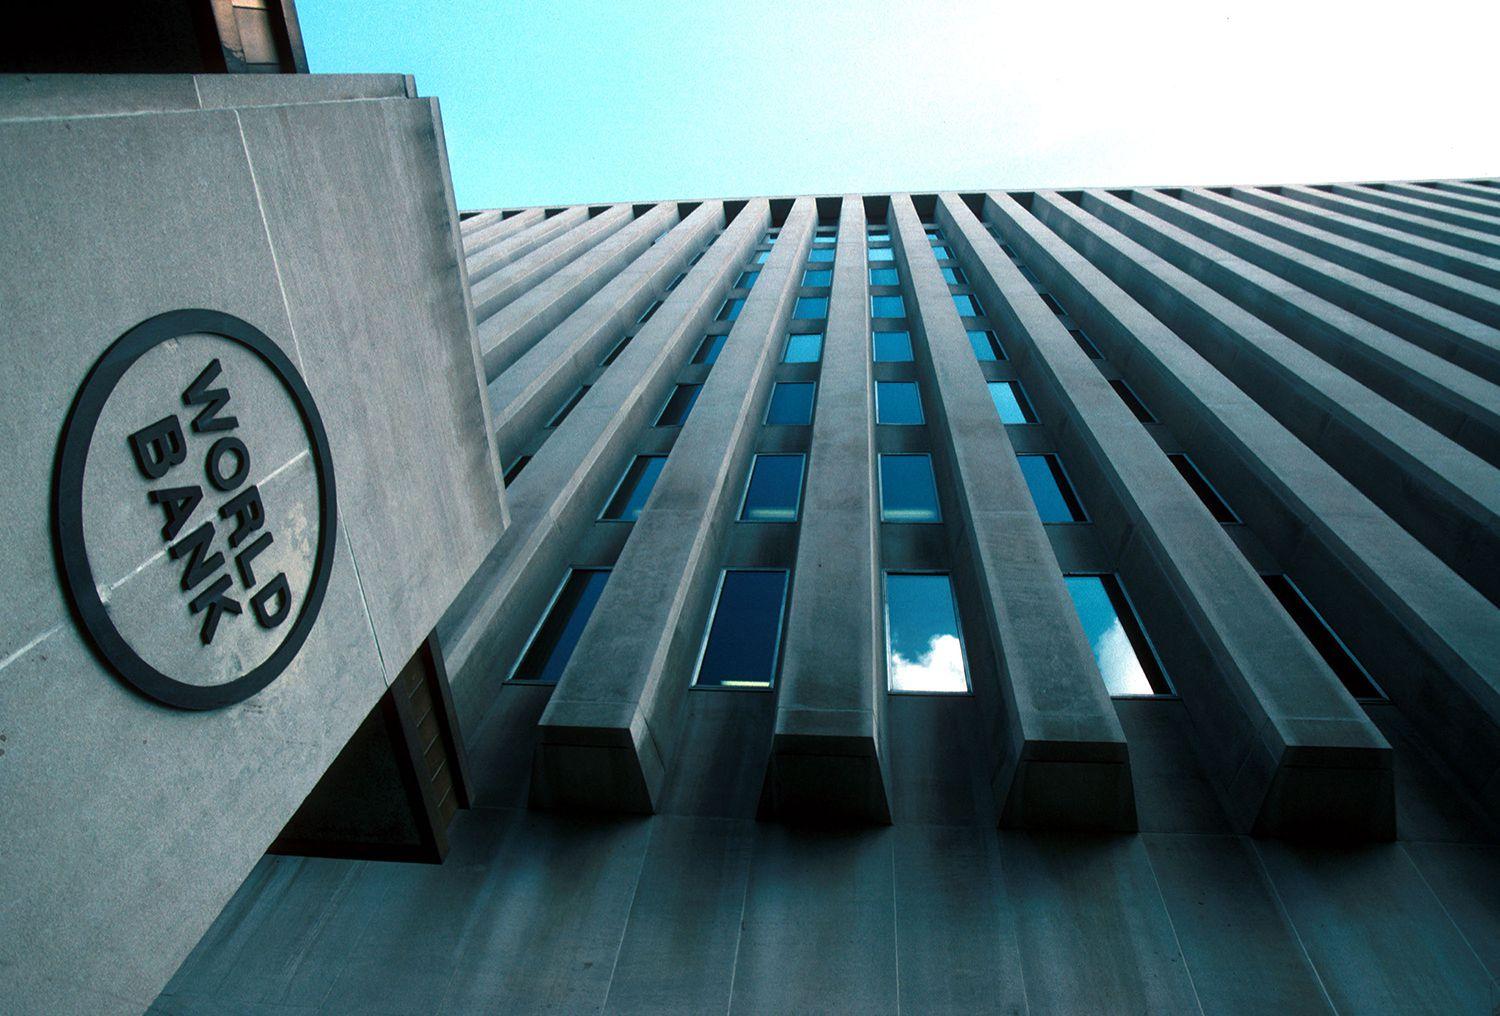 Svjetska banka najavila dodatno smanjenje globalnog rasta ove godine